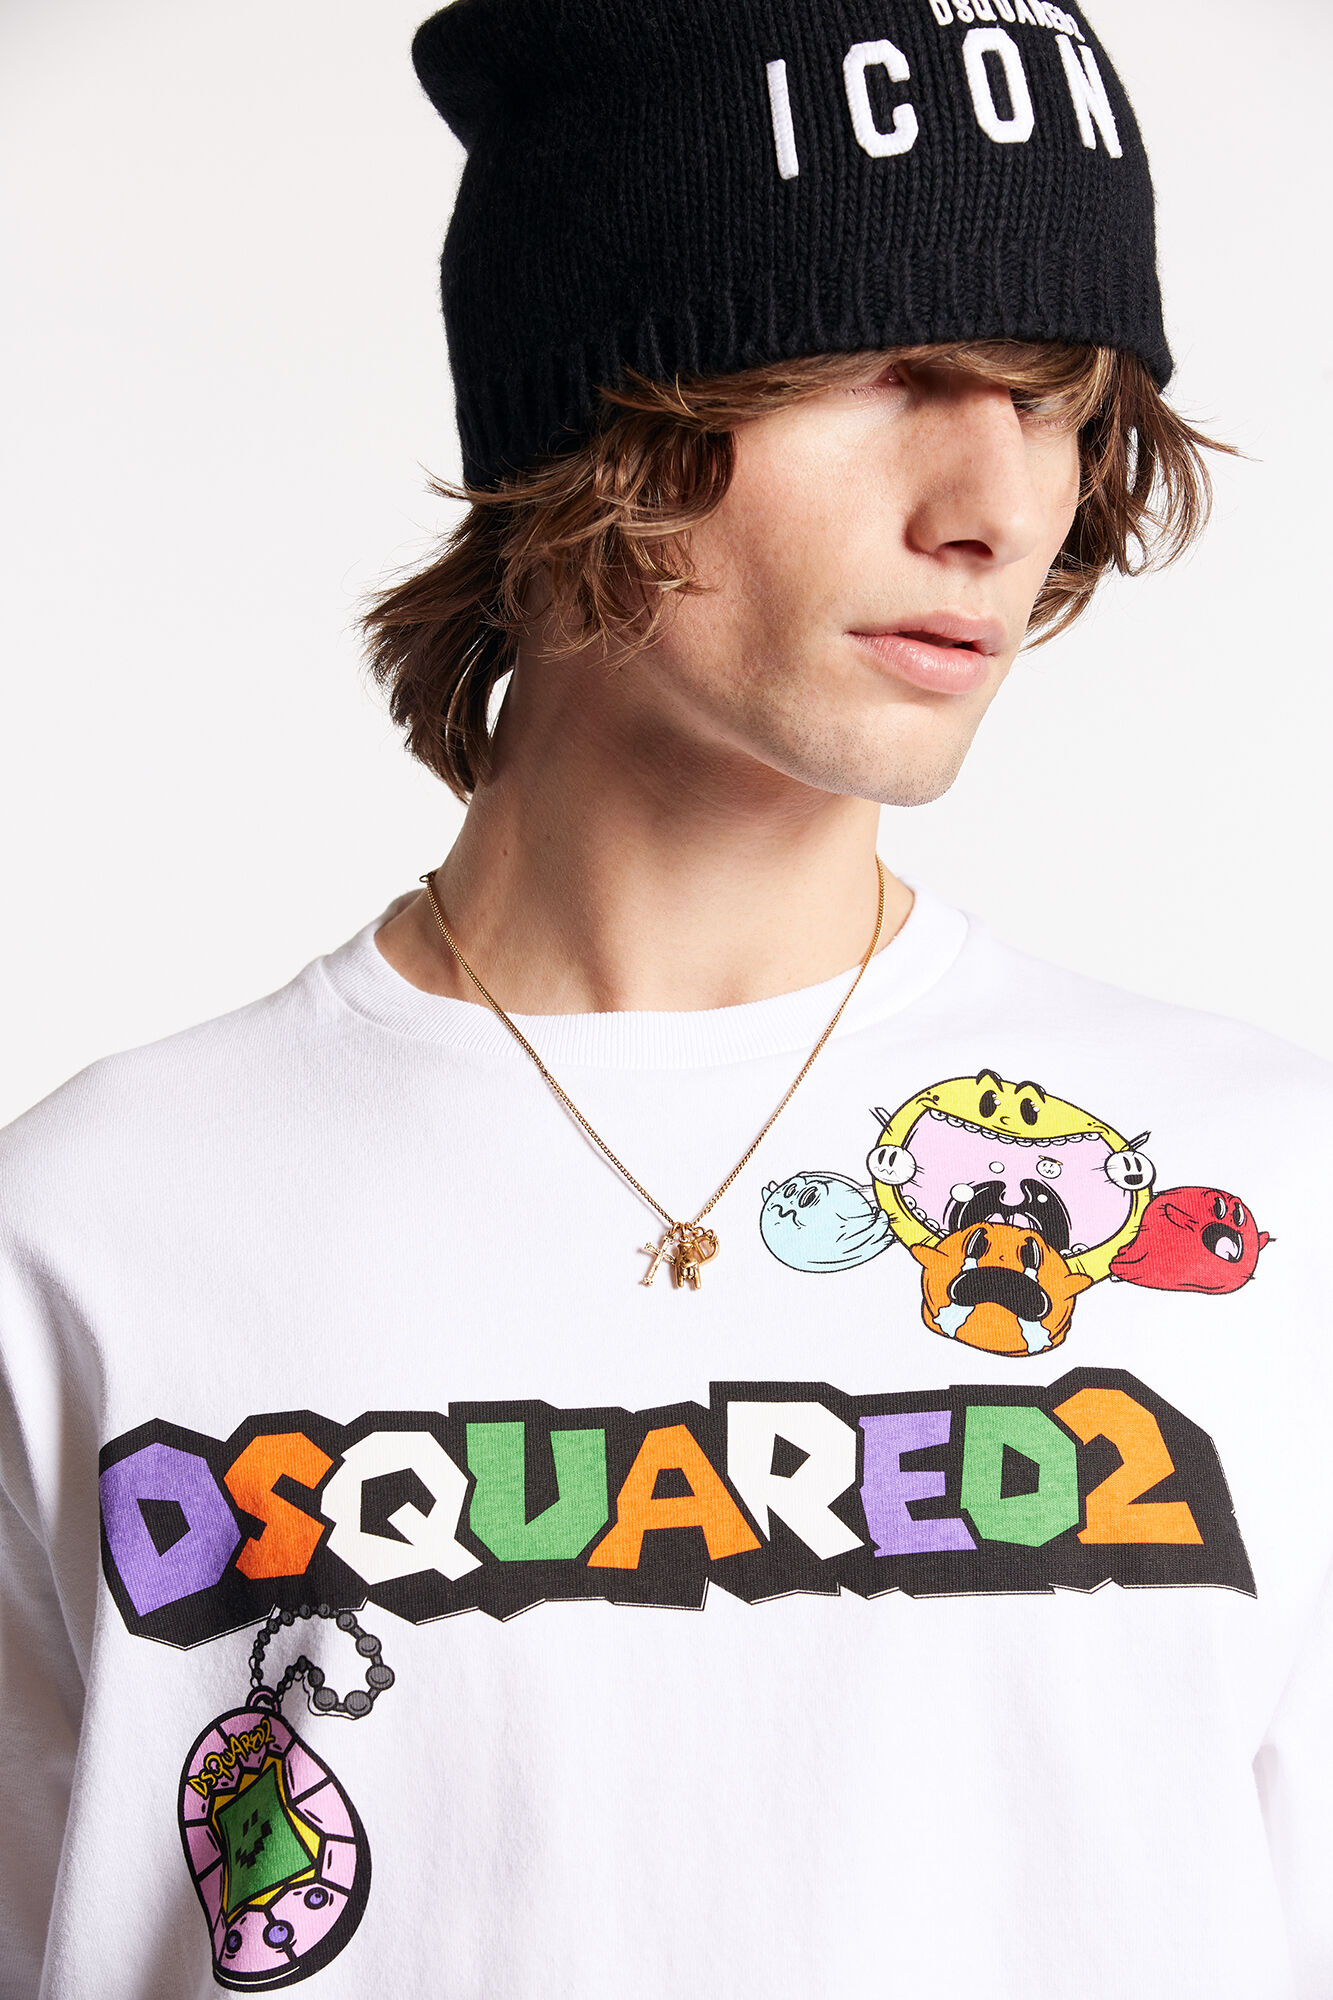 Dsquared2 Skater T-shirt